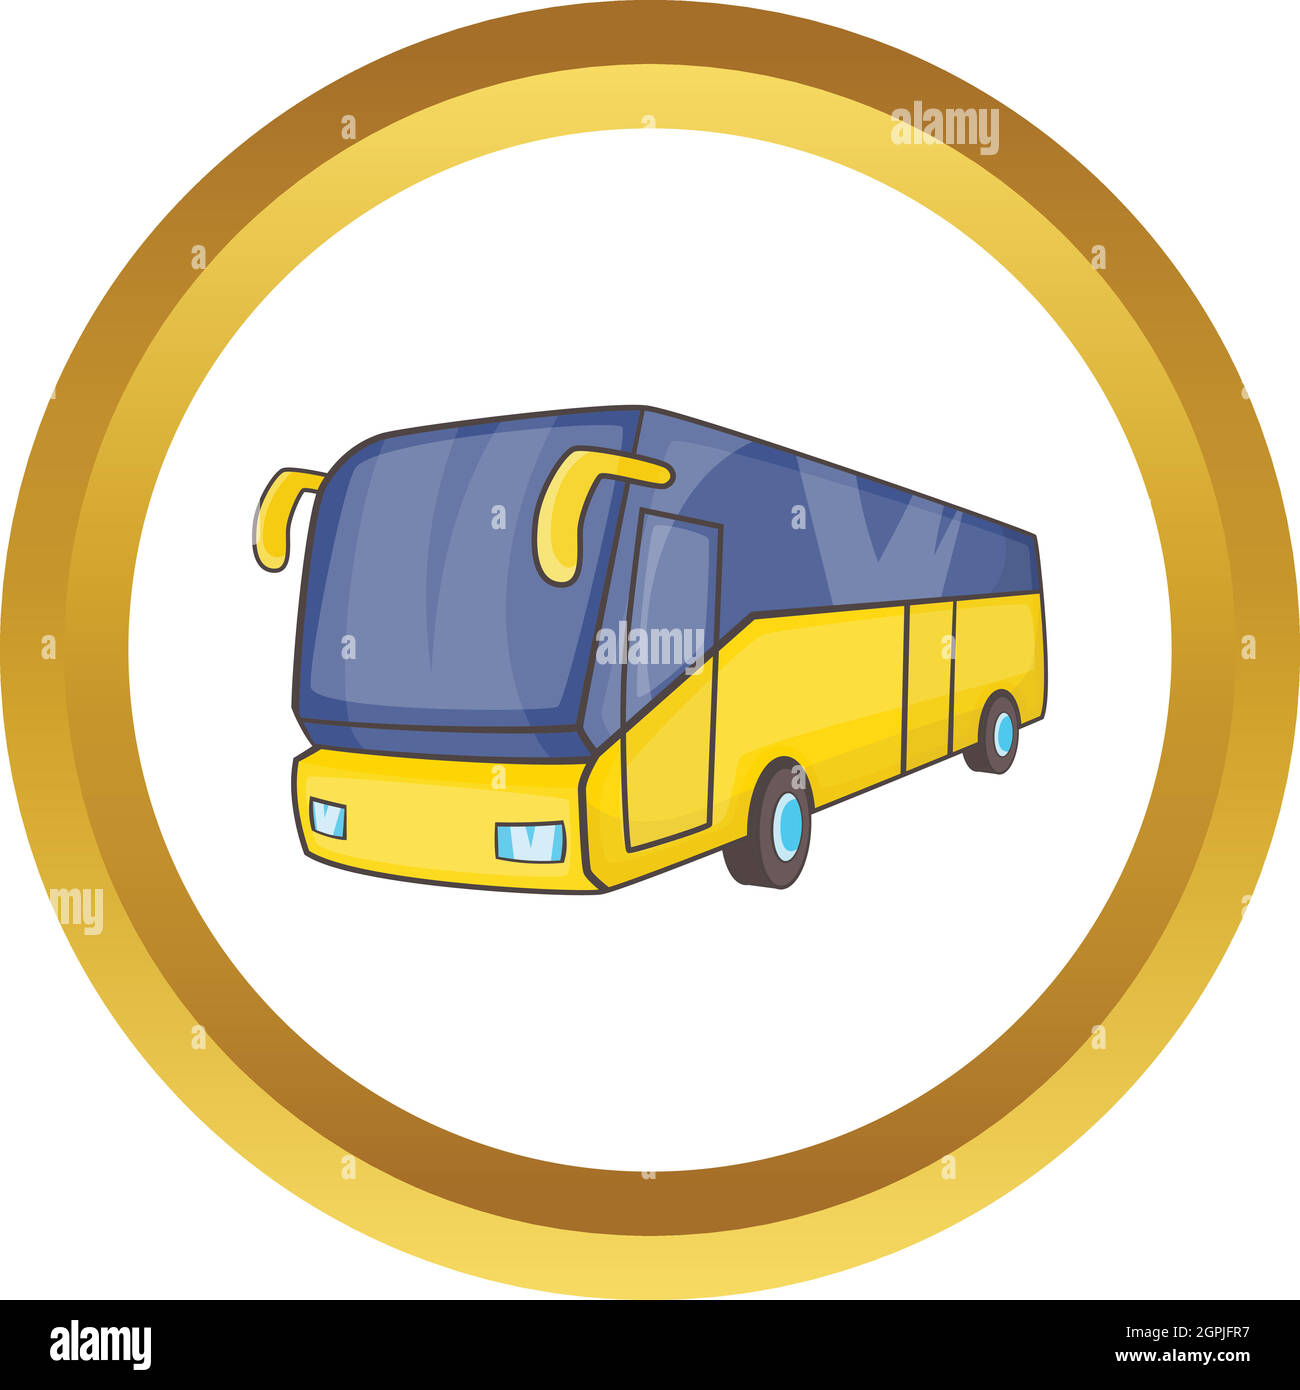 Yellow tourist bus vector icon Stock Vector